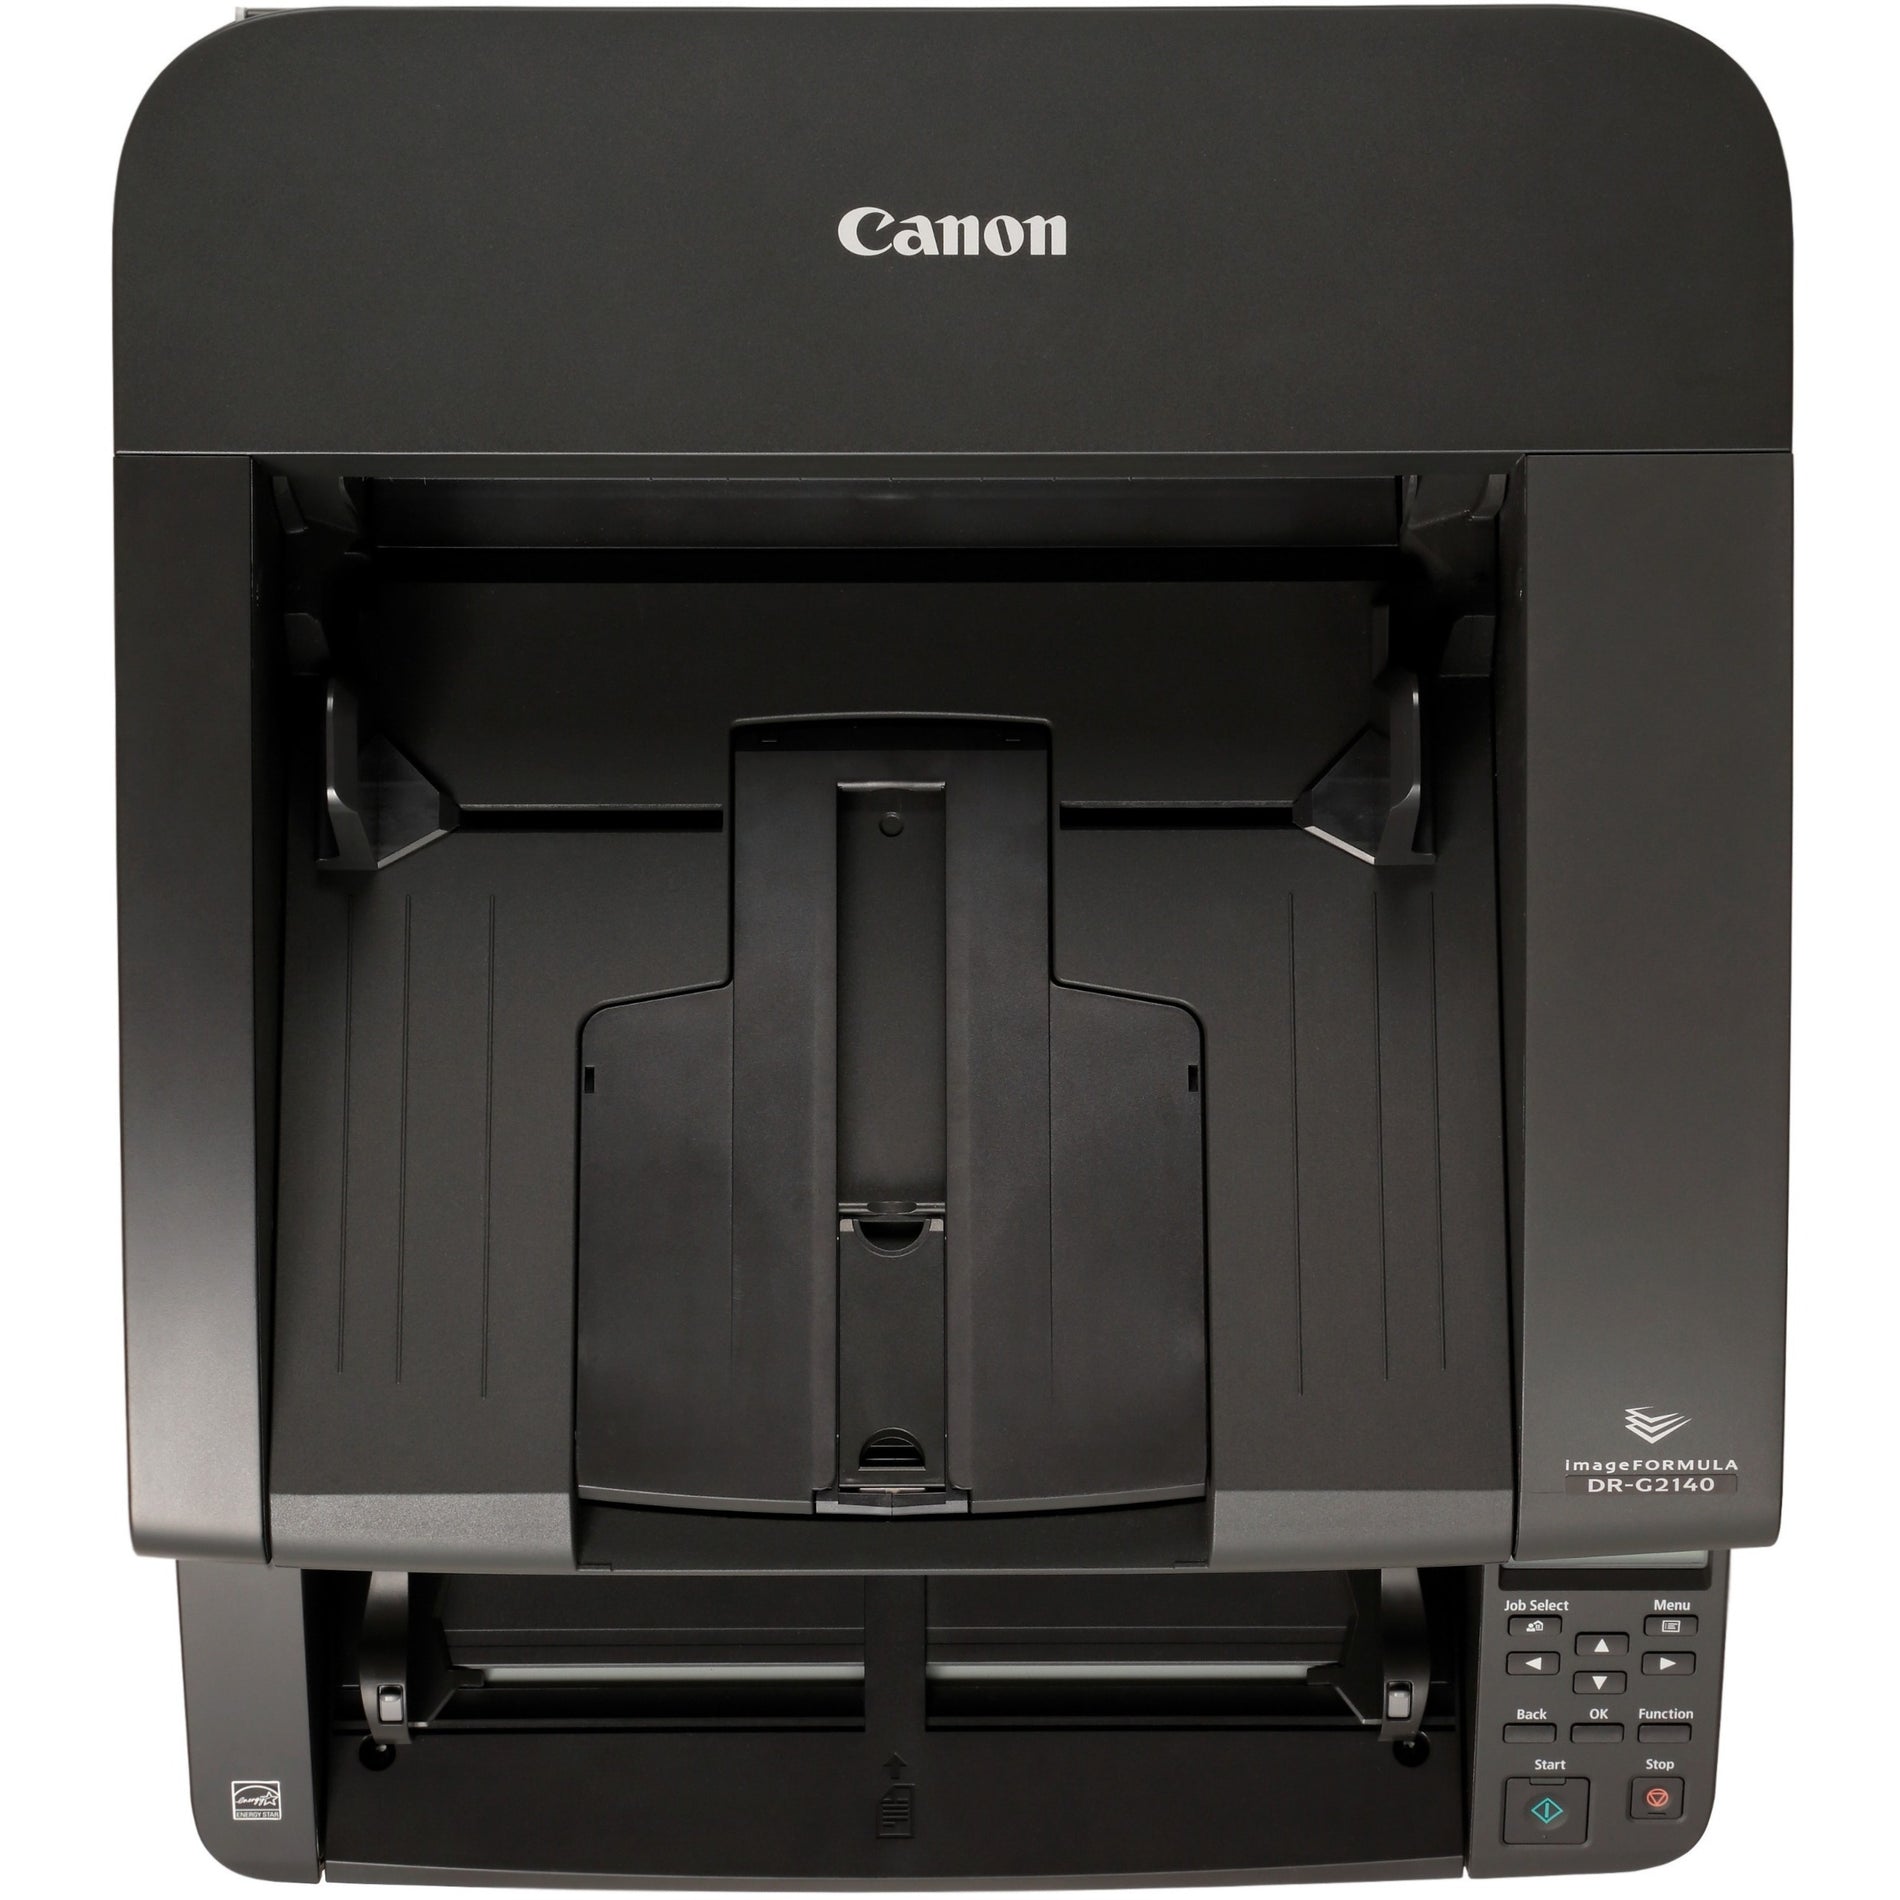 Canon 3149C002 imageFORMULA DR-G2140 Production Scanner, 140PPM 600DPI